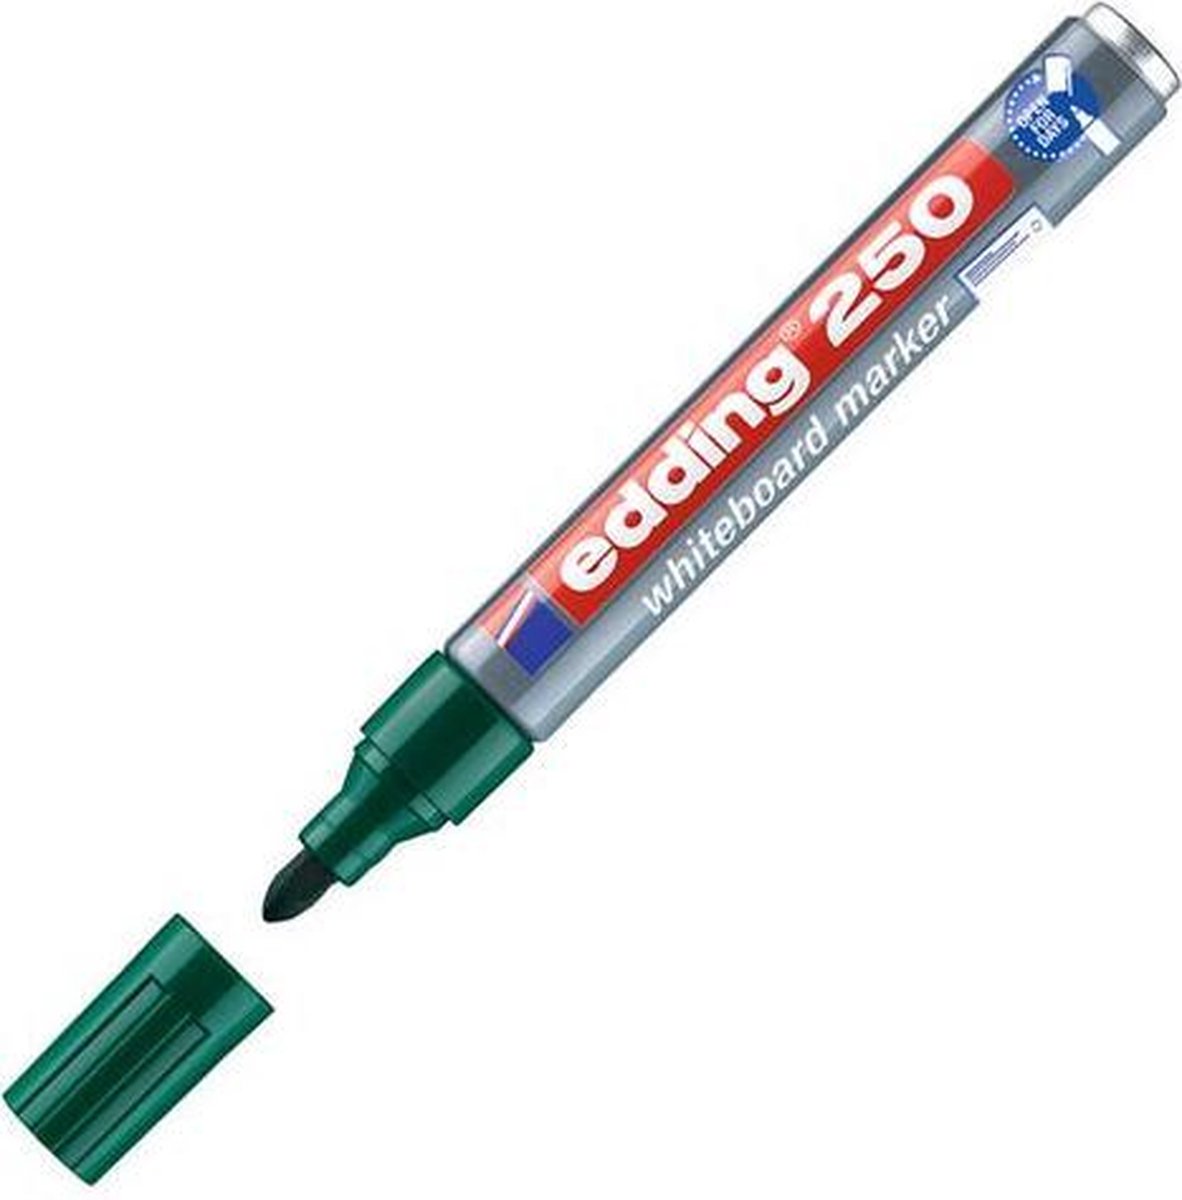 Viltstift edding 250 whiteboard rond groen 1.5-3mm - 10 stuks - 10 stuks